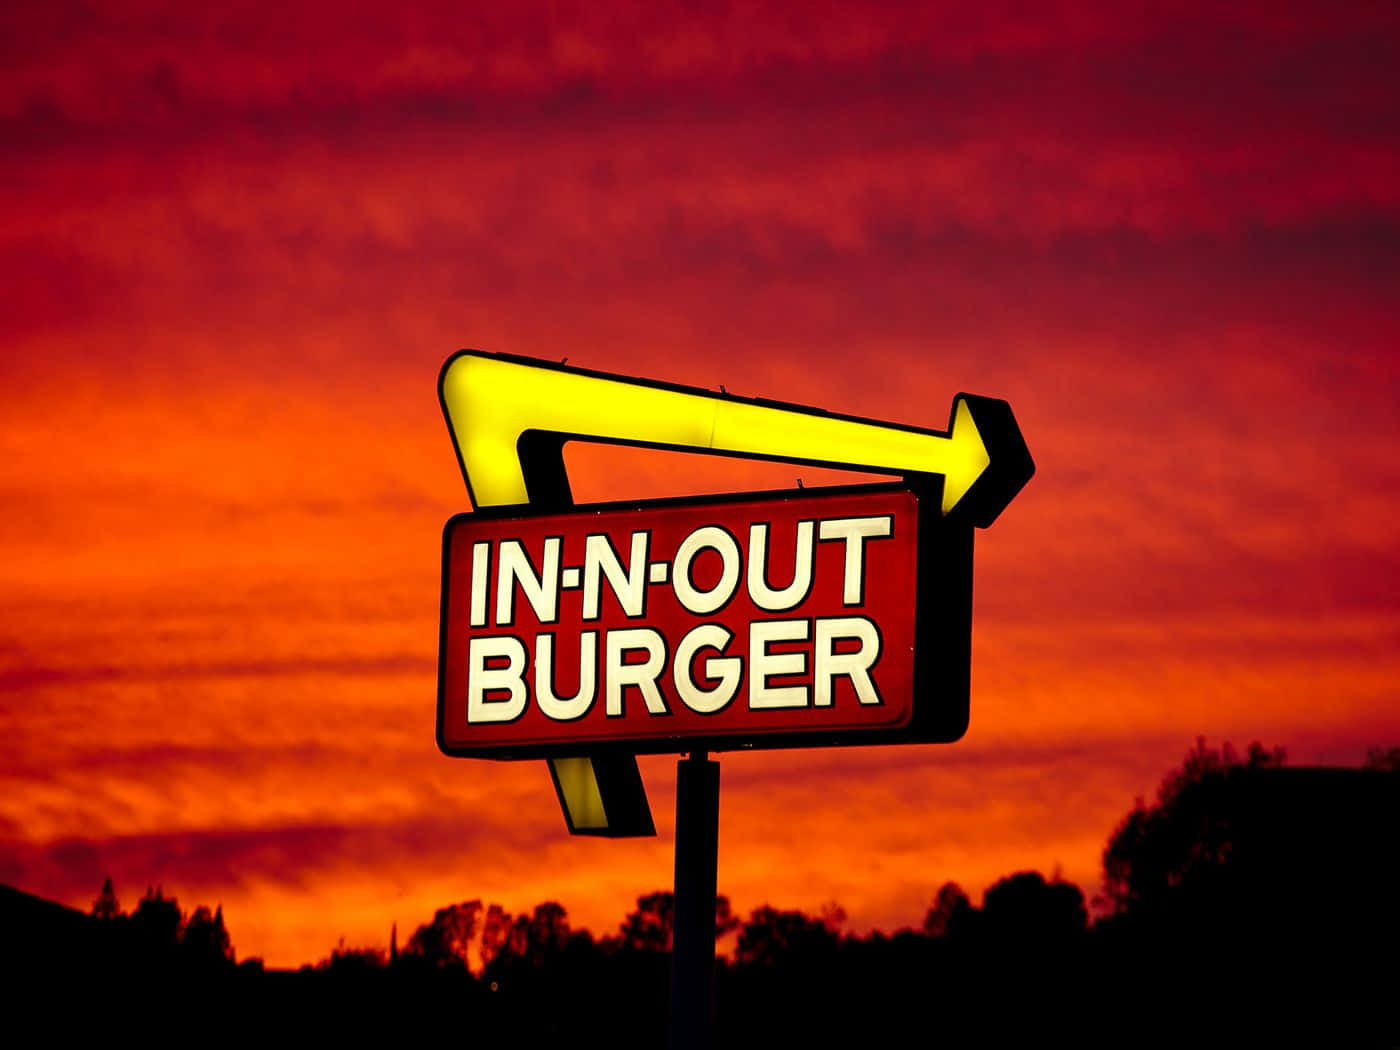 Nyd lækre burgere og pomfritter på In-N-Out! Wallpaper